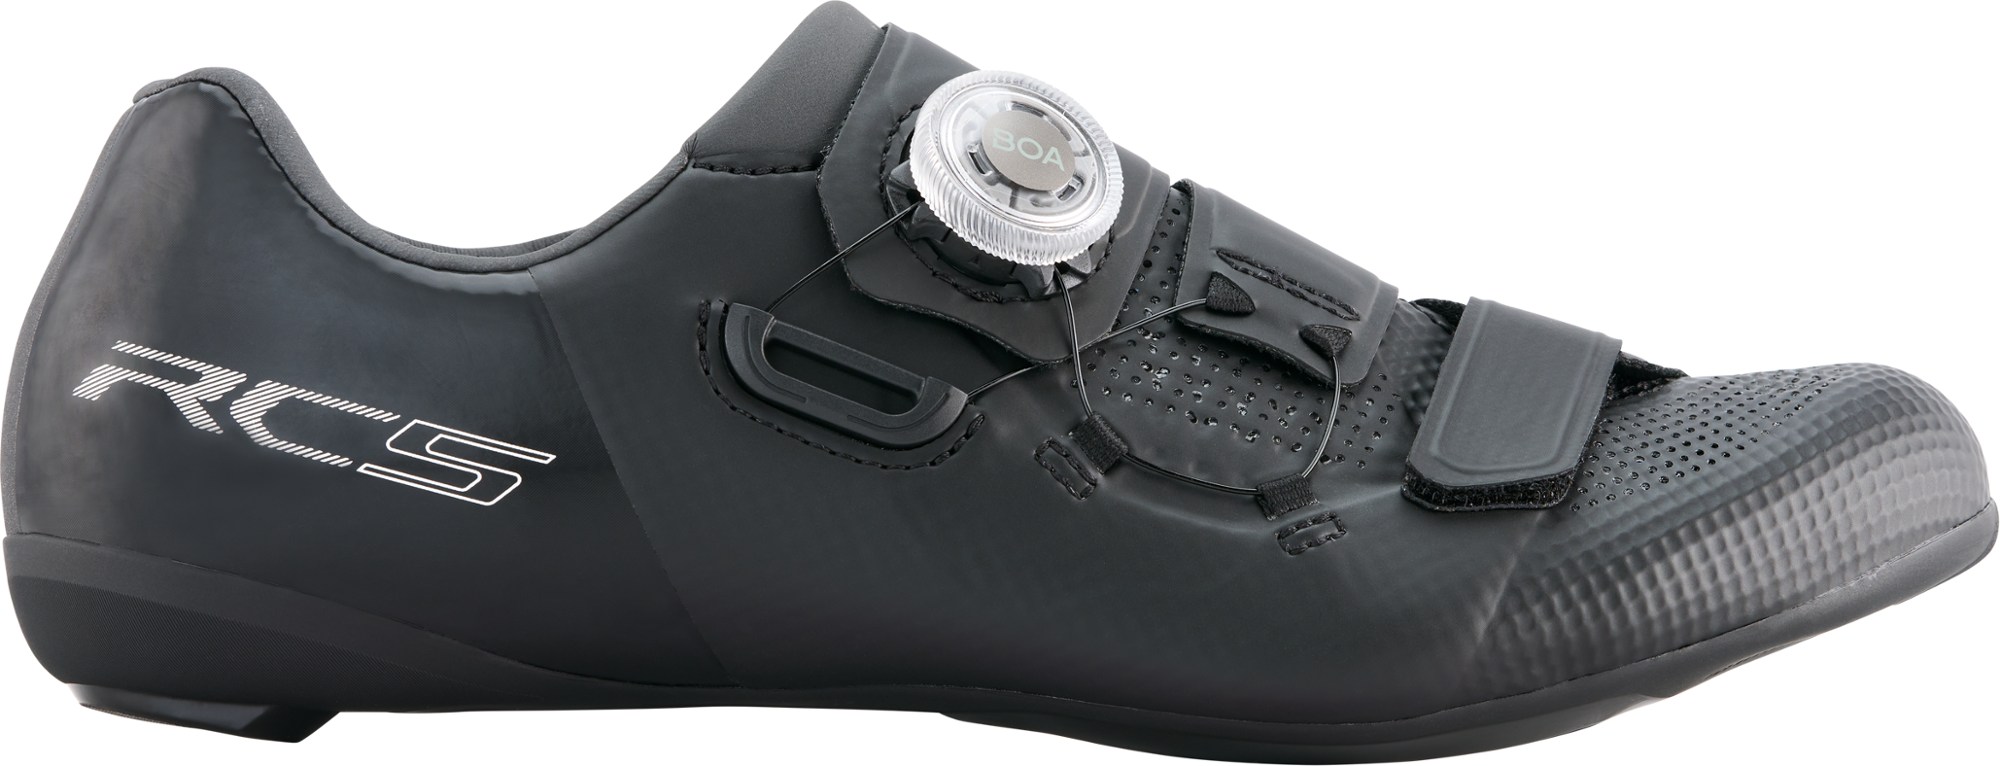 Шоссейные велосипедные туфли RC5 — мужские Shimano, черный